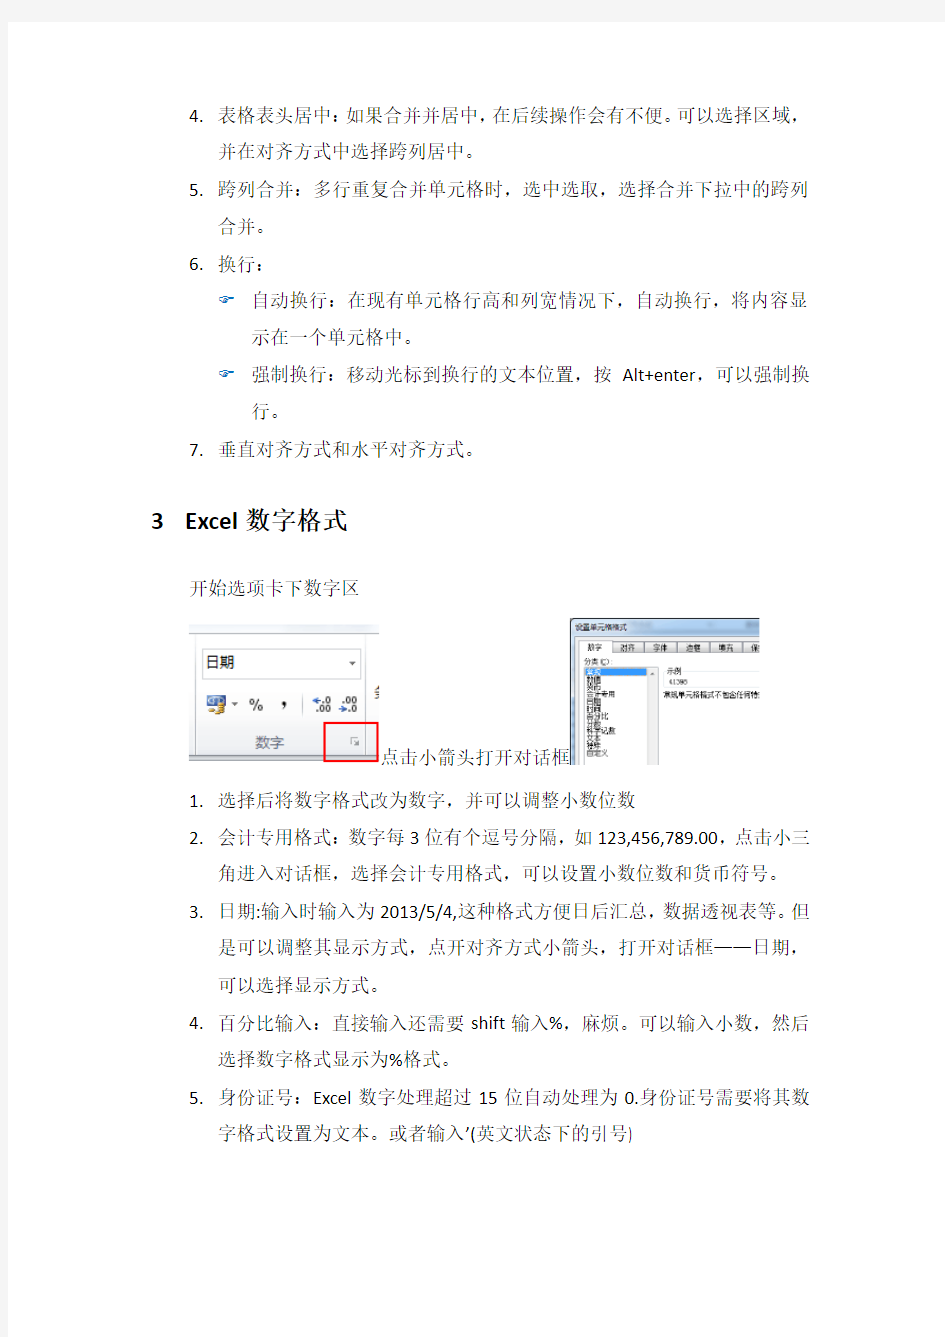 Excel表格格式设置